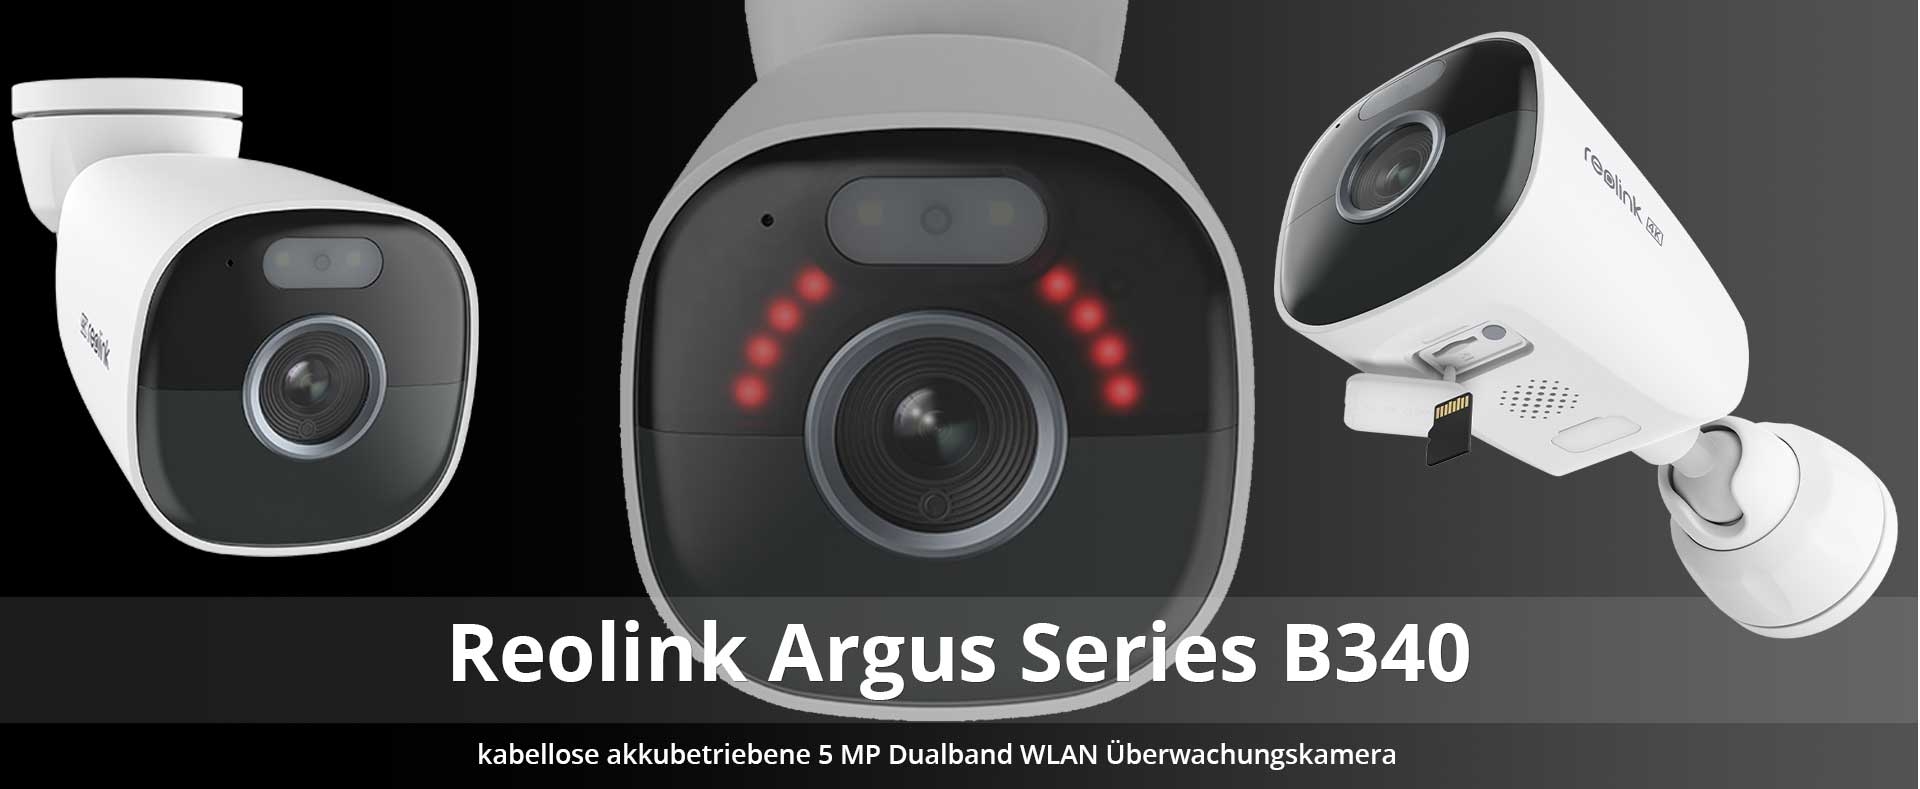 Reolink Argus Series B340 kabellose akkubetriebene 5 MP Dualband WLAN Überwachungskamera